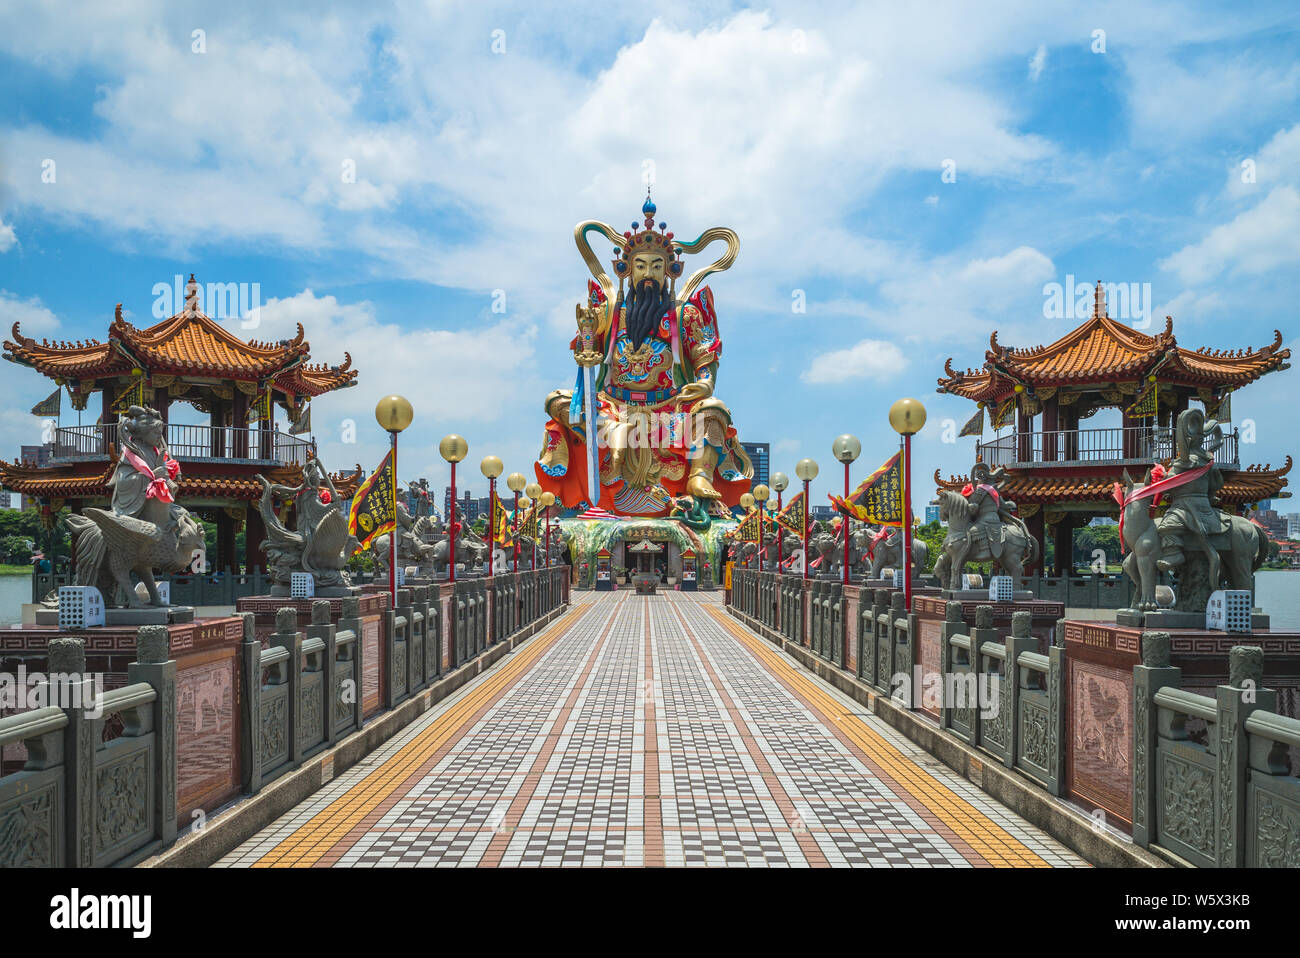 Kaohsiung, Taiwan - 29. Juli 2019: Xuanwu Gott Statue und yuanti Tempel auf Lotus Teich. Xuanwu Gott ist ein mächtiger Gott, in der Lage, die Elemente zur Steuerung und c Stockfoto